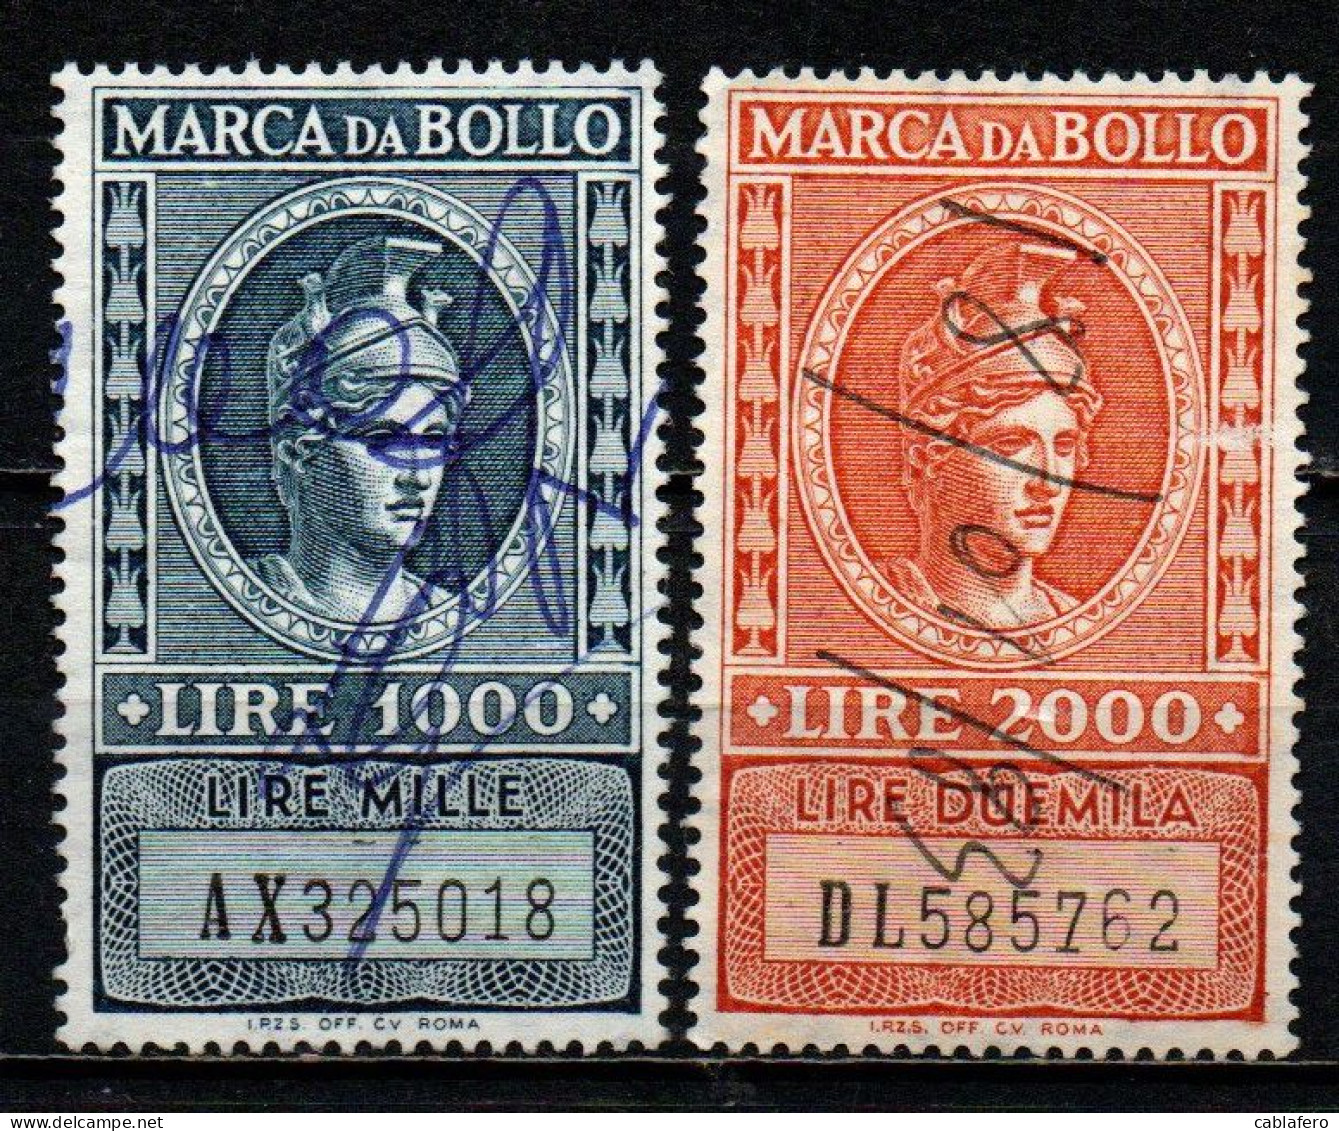 ITALIA REPUBBLICA - 1959 - MARCA DA BOLLO A TASSA FISSA - FILIGRANA STELLA - NUOVO FORMATO - USATI - Fiscali